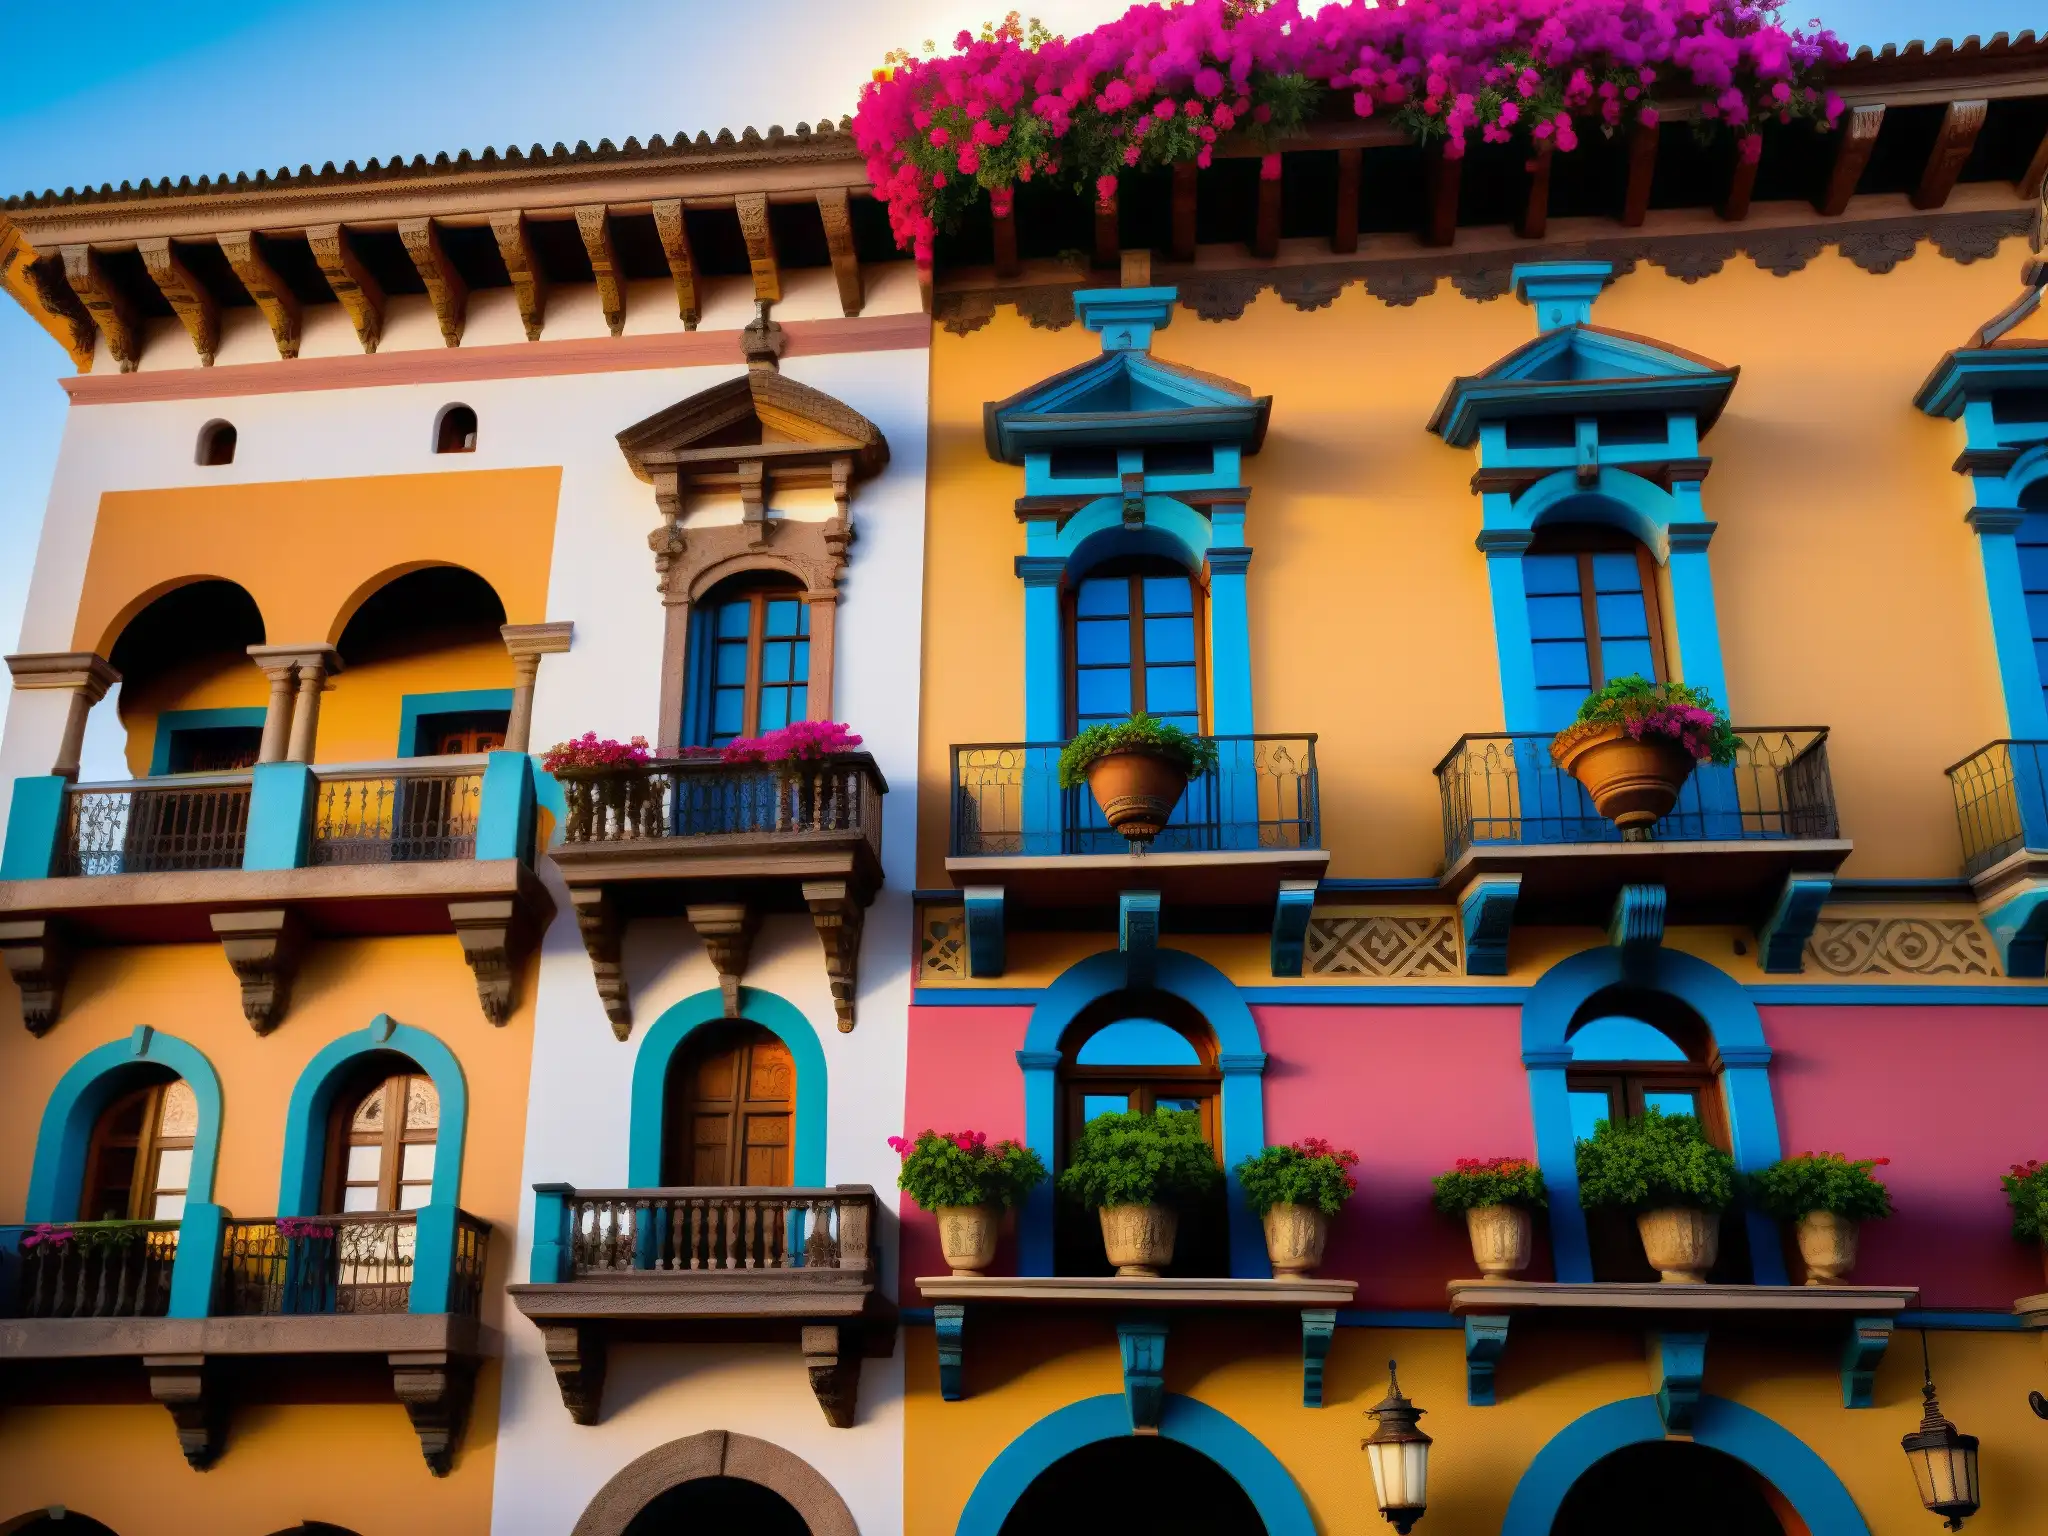 La Leyenda de la Zacatecana Querétaro: Imagen documental de La Zacatecana en Querétaro, resaltando sus detalles arquitectónicos, balcones de hierro forjado y la belleza envejecida, con bougainvillea en primer plano